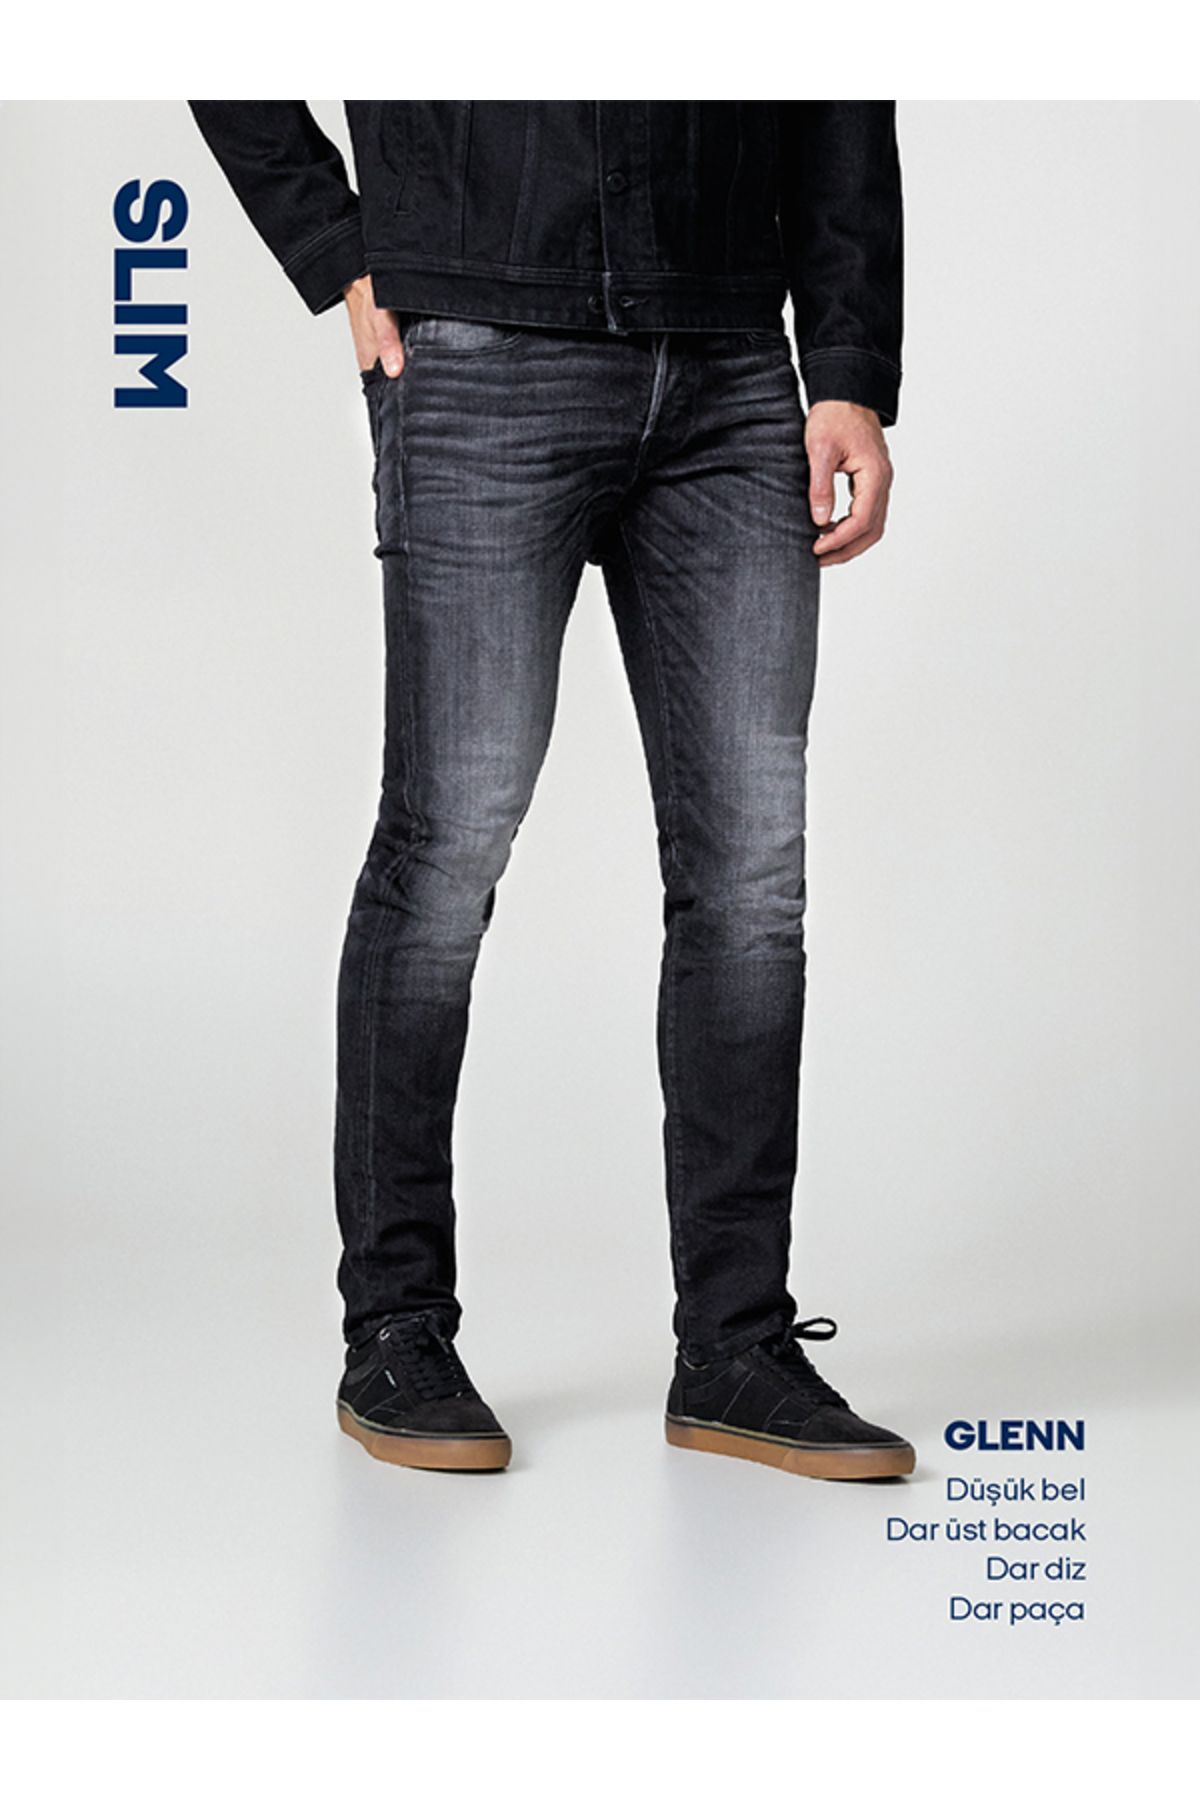 Jack & Jones Glenn Evan 477 Slim Fit Jean